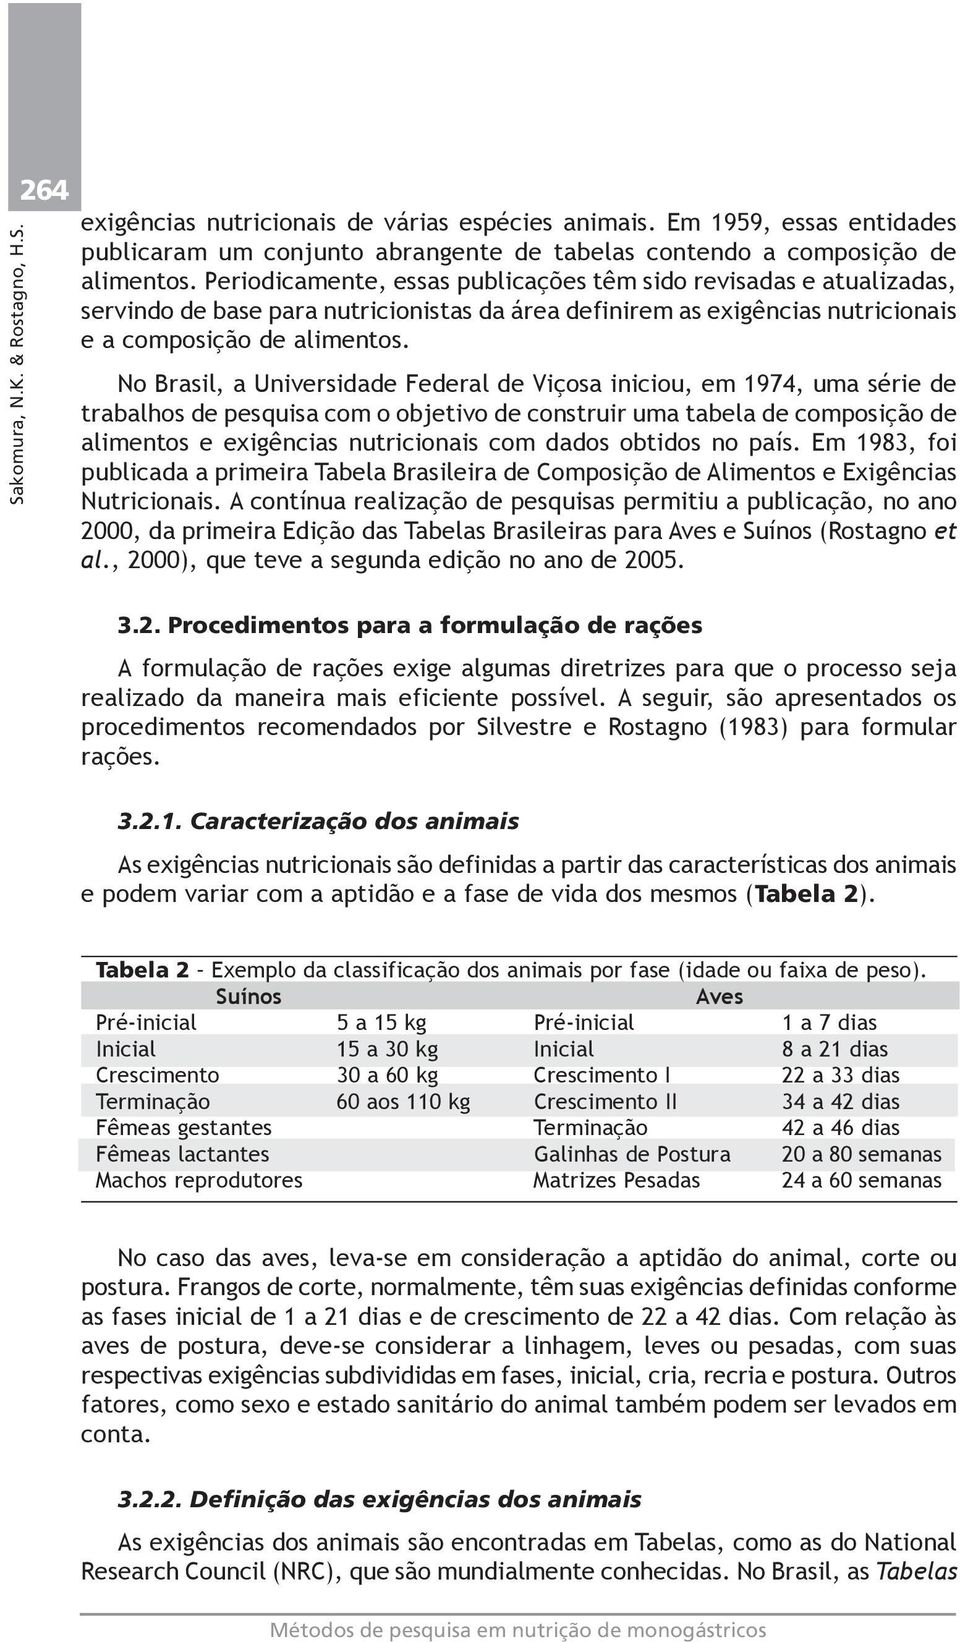 No Brasil, a Universidade Federal de Viçosa iniciou, em 1974, uma série de trabalhos de pesquisa com o objetivo de construir uma tabela de composição de alimentos e exigências nutricionais com dados